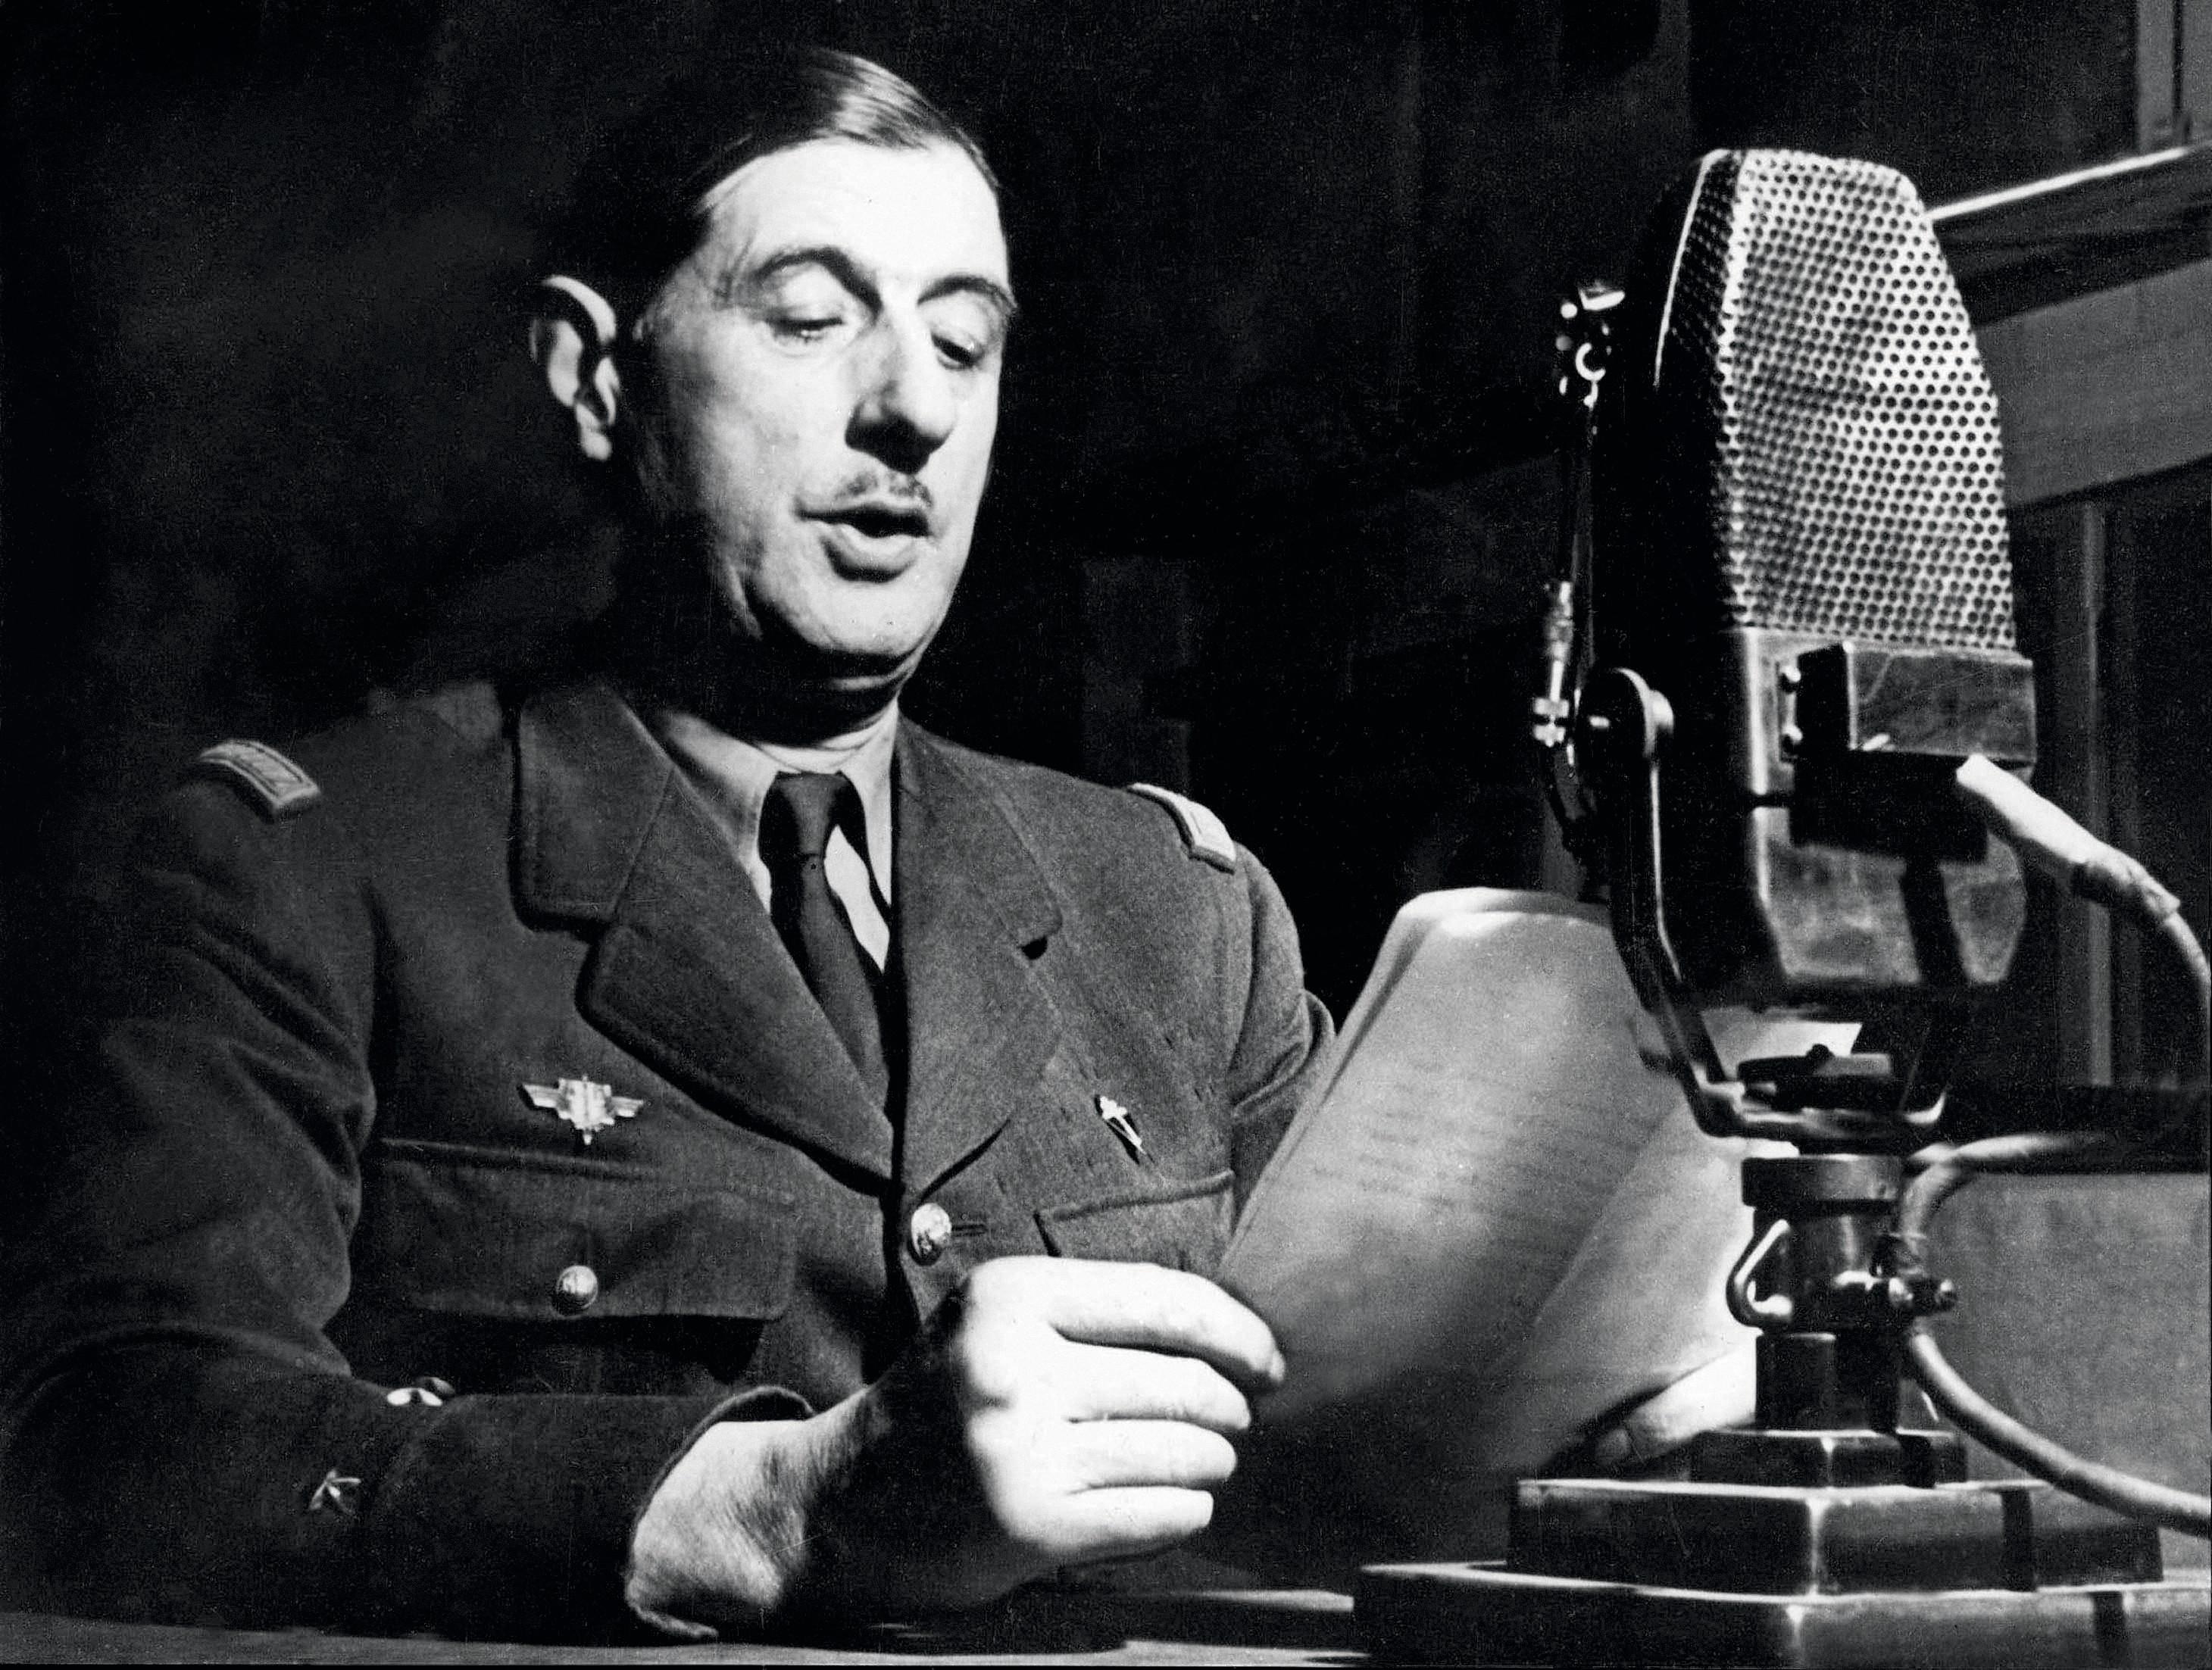 Appel 18 Juin 1940 Général de Gaulle